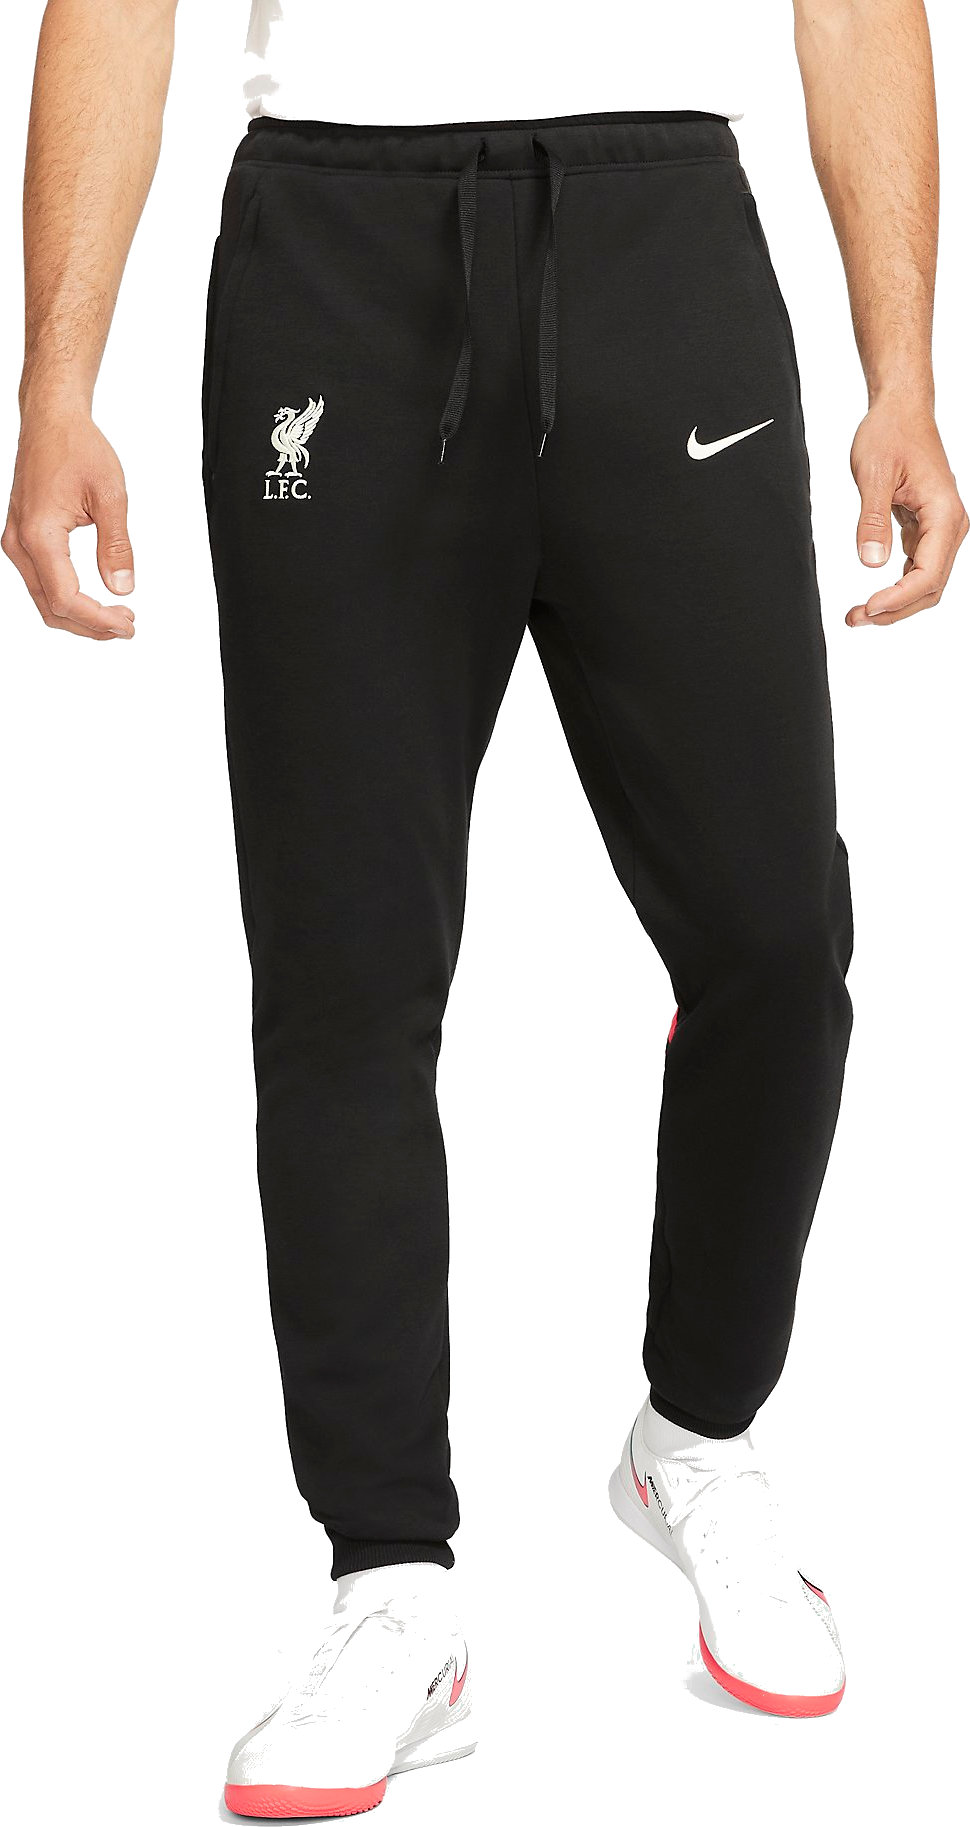 Pantaloni Nike Liverpool FC Men s Dri-FIT Soccer Pants